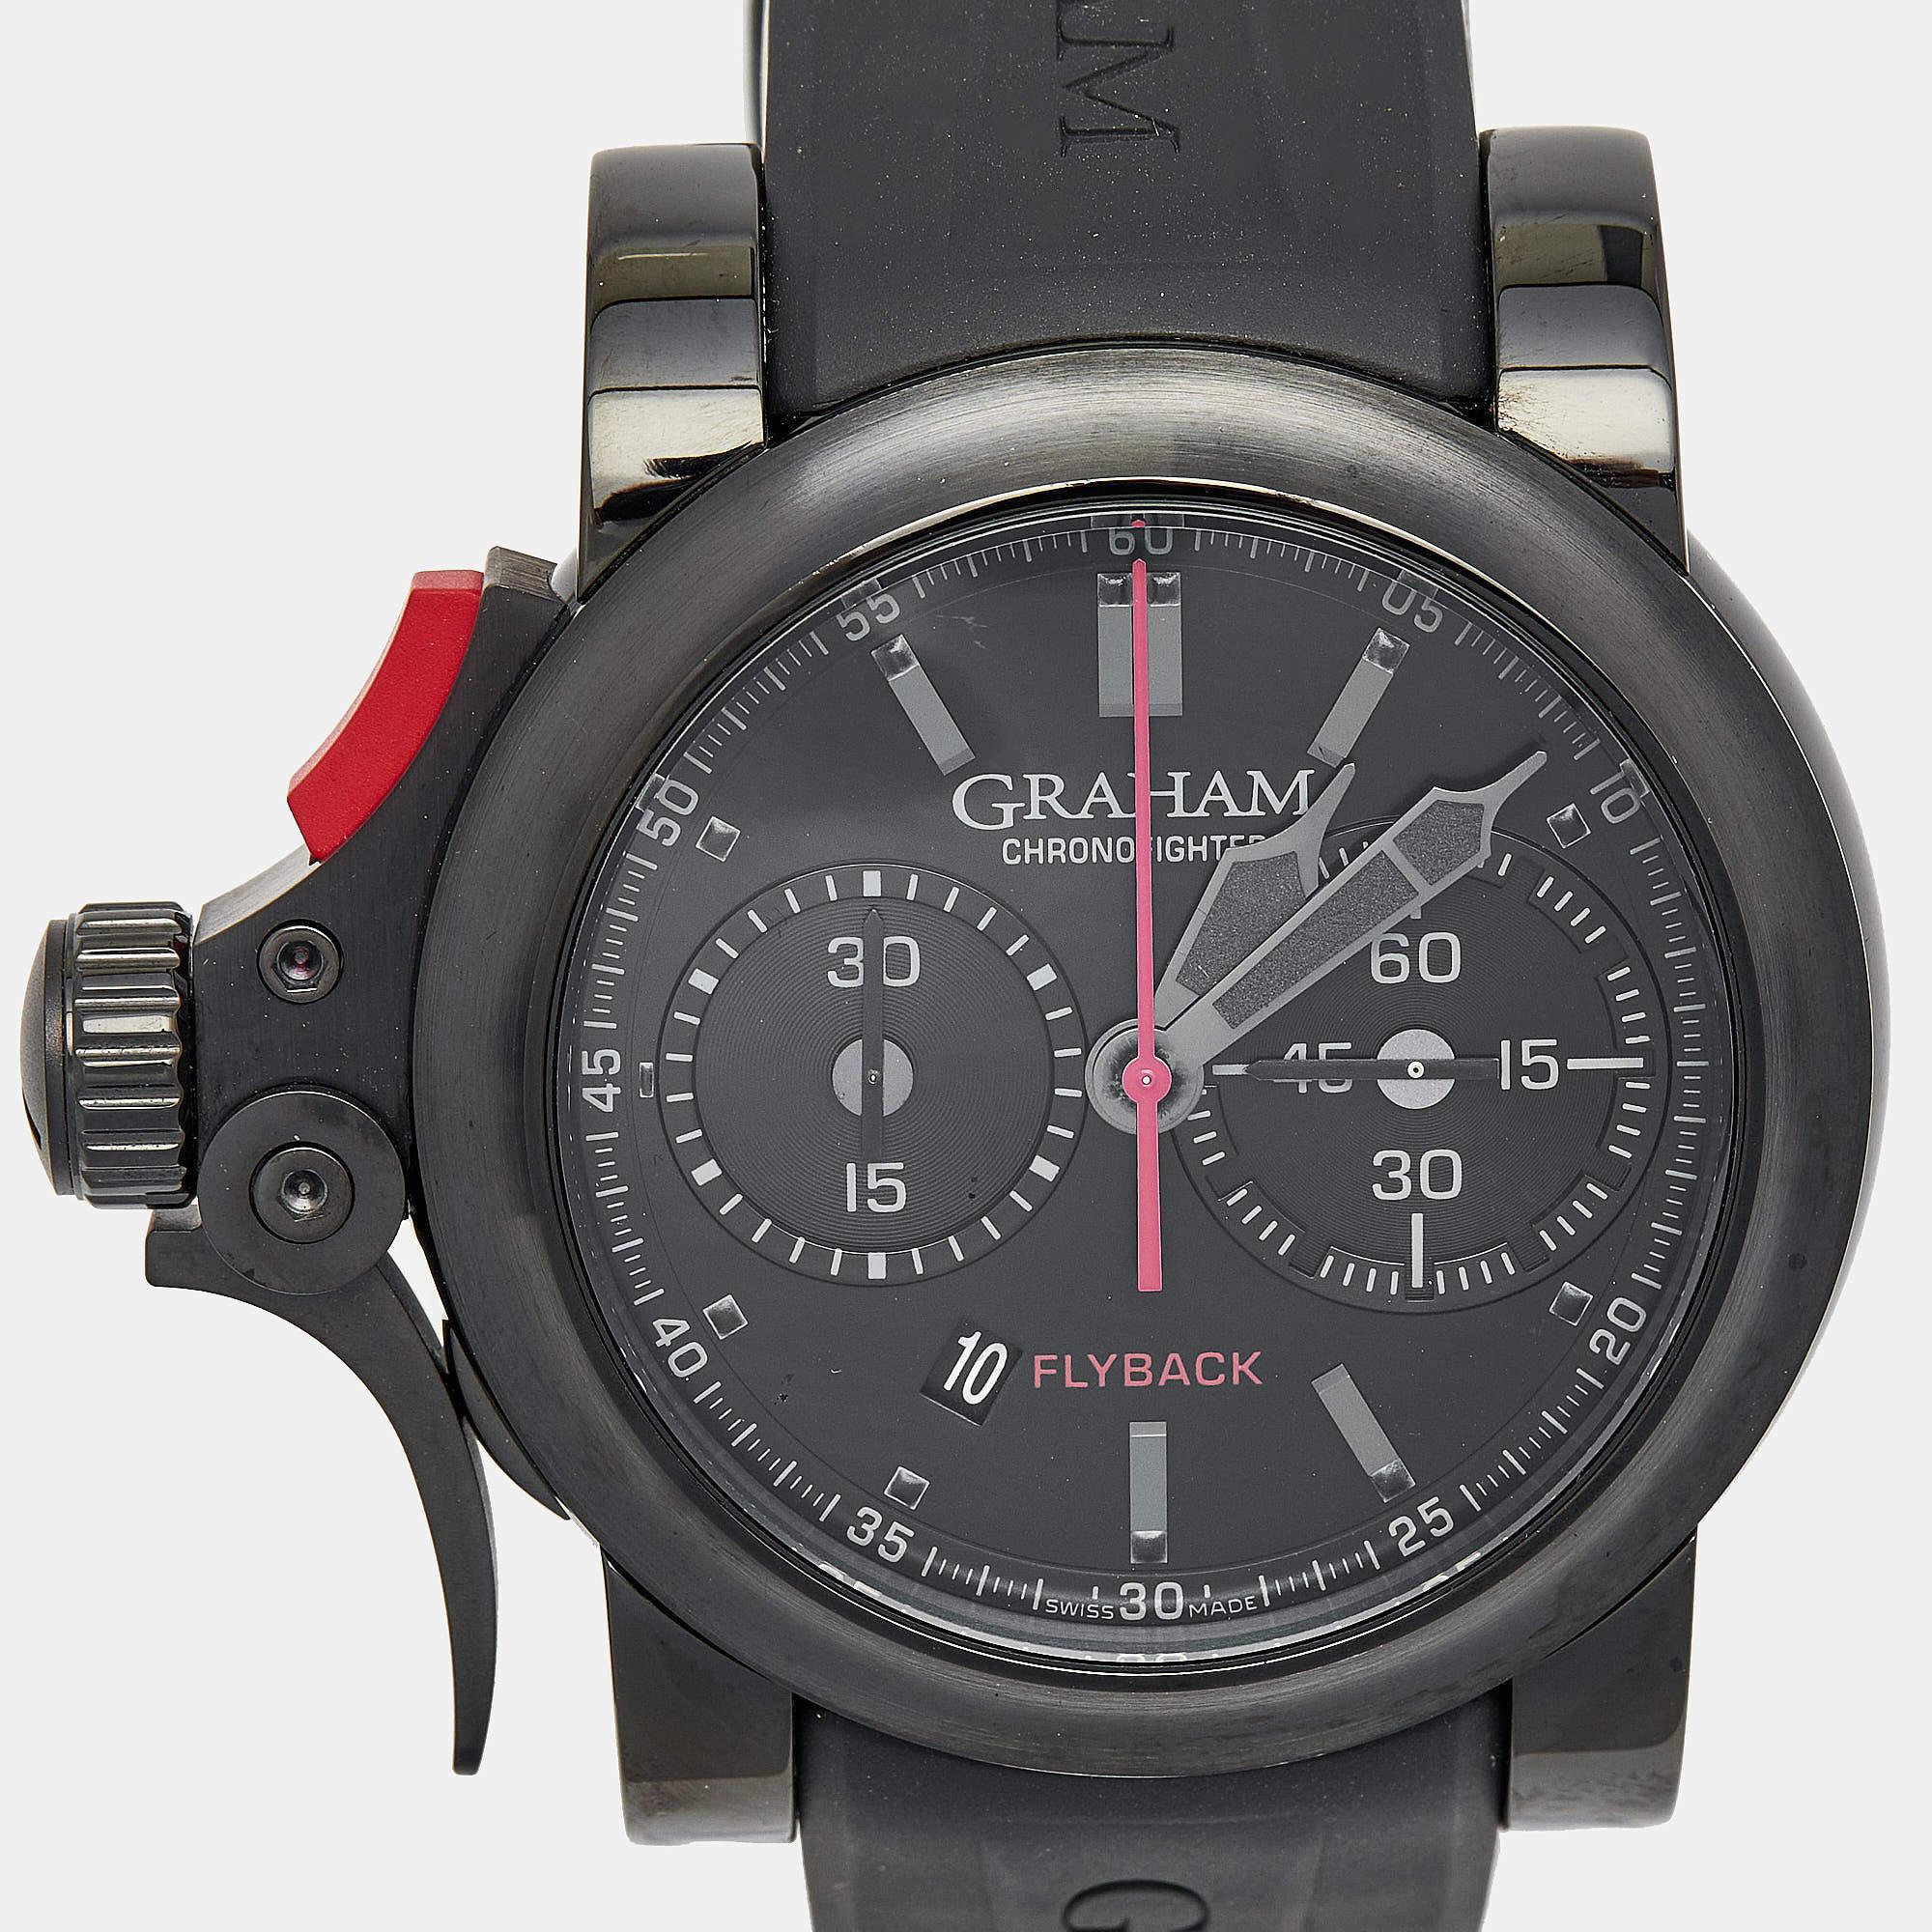 Die Chronofighter-Uhrenmodelle sind perfekte Beispiele für Grahams Fähigkeiten als Uhrmachermeister; jedes Stück zeigt uns, wie die Marke die Balance zwischen mechanischem Geschick und visuellen Aspekten meisterhaft hinbekommen hat. Die Graham